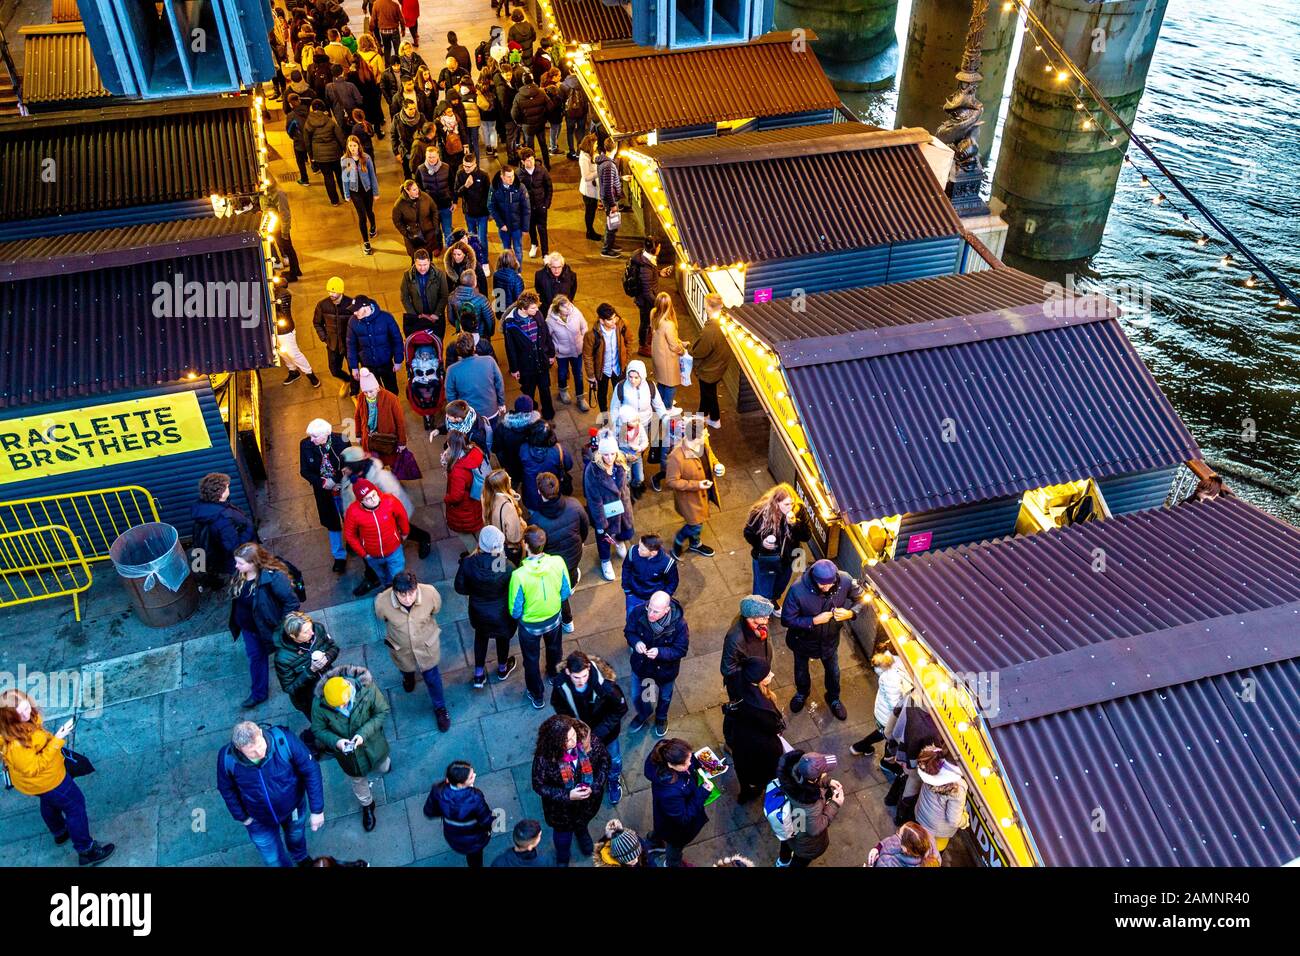 Leute, die Stände im festlichen Southbank Centre Winter Market, London, Großbritannien, betrachten Stockfoto